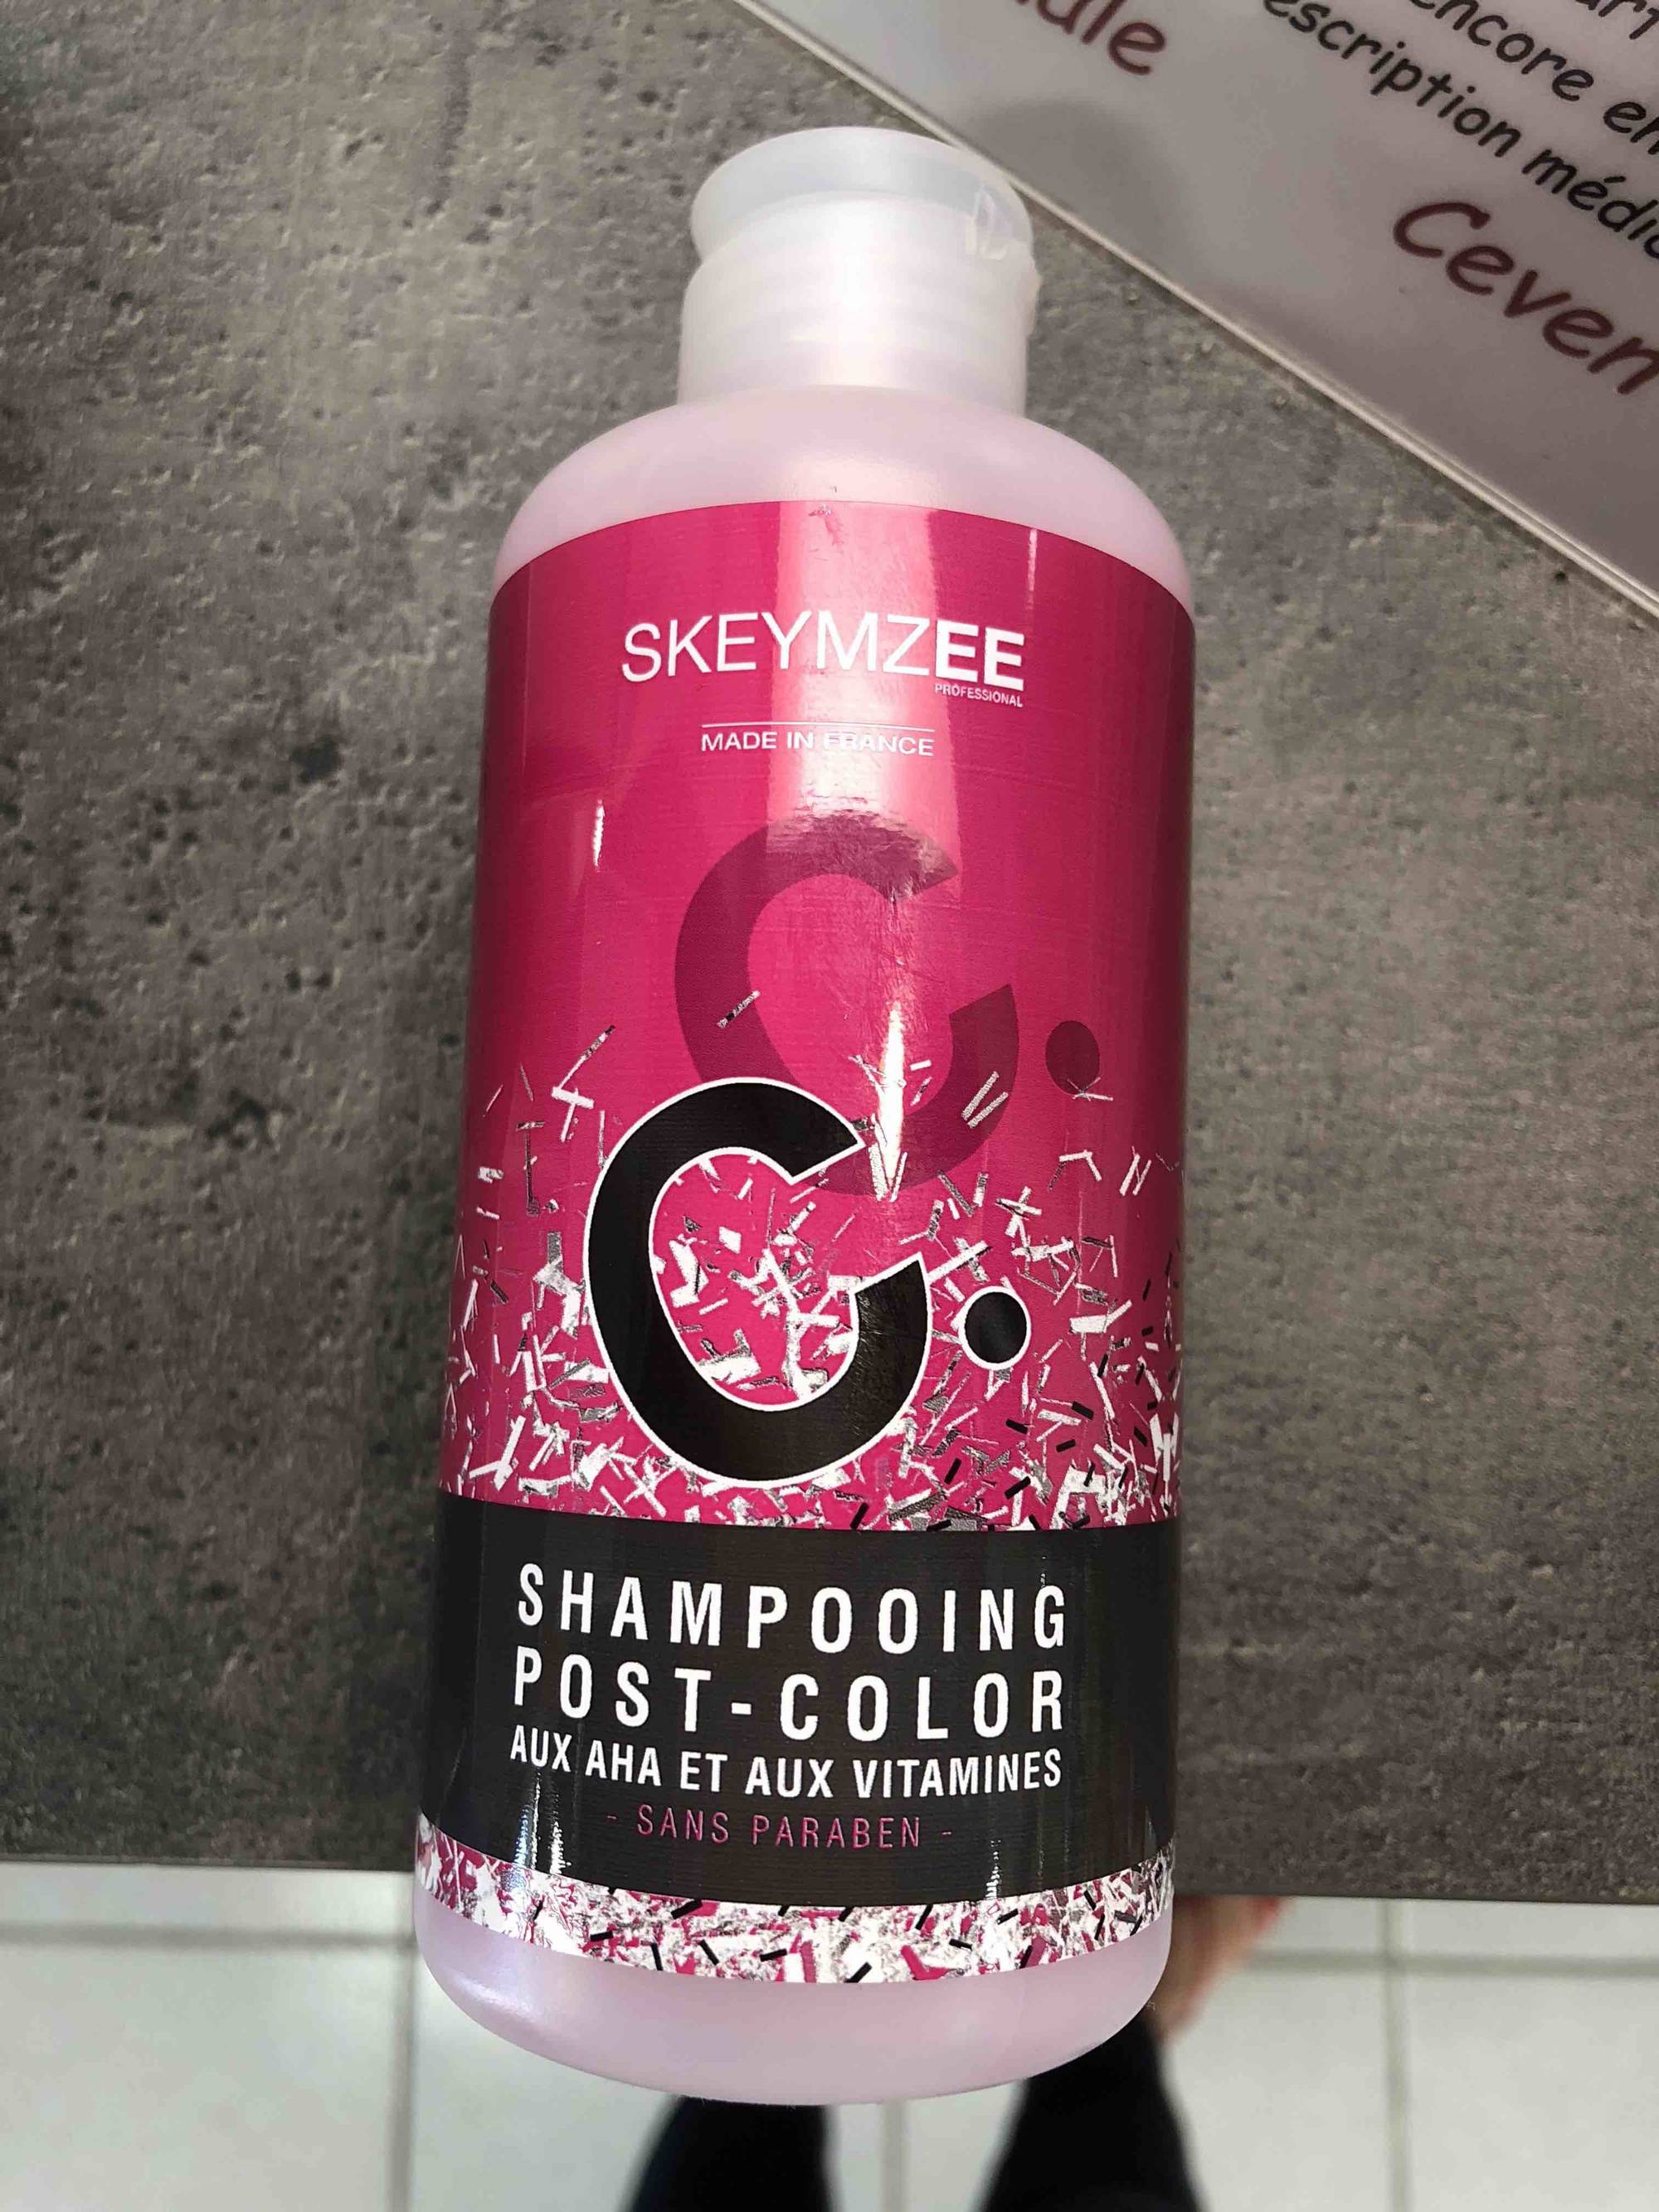 SKEYMZEE - Shampooing post-color aux Aha et aux Vitamines